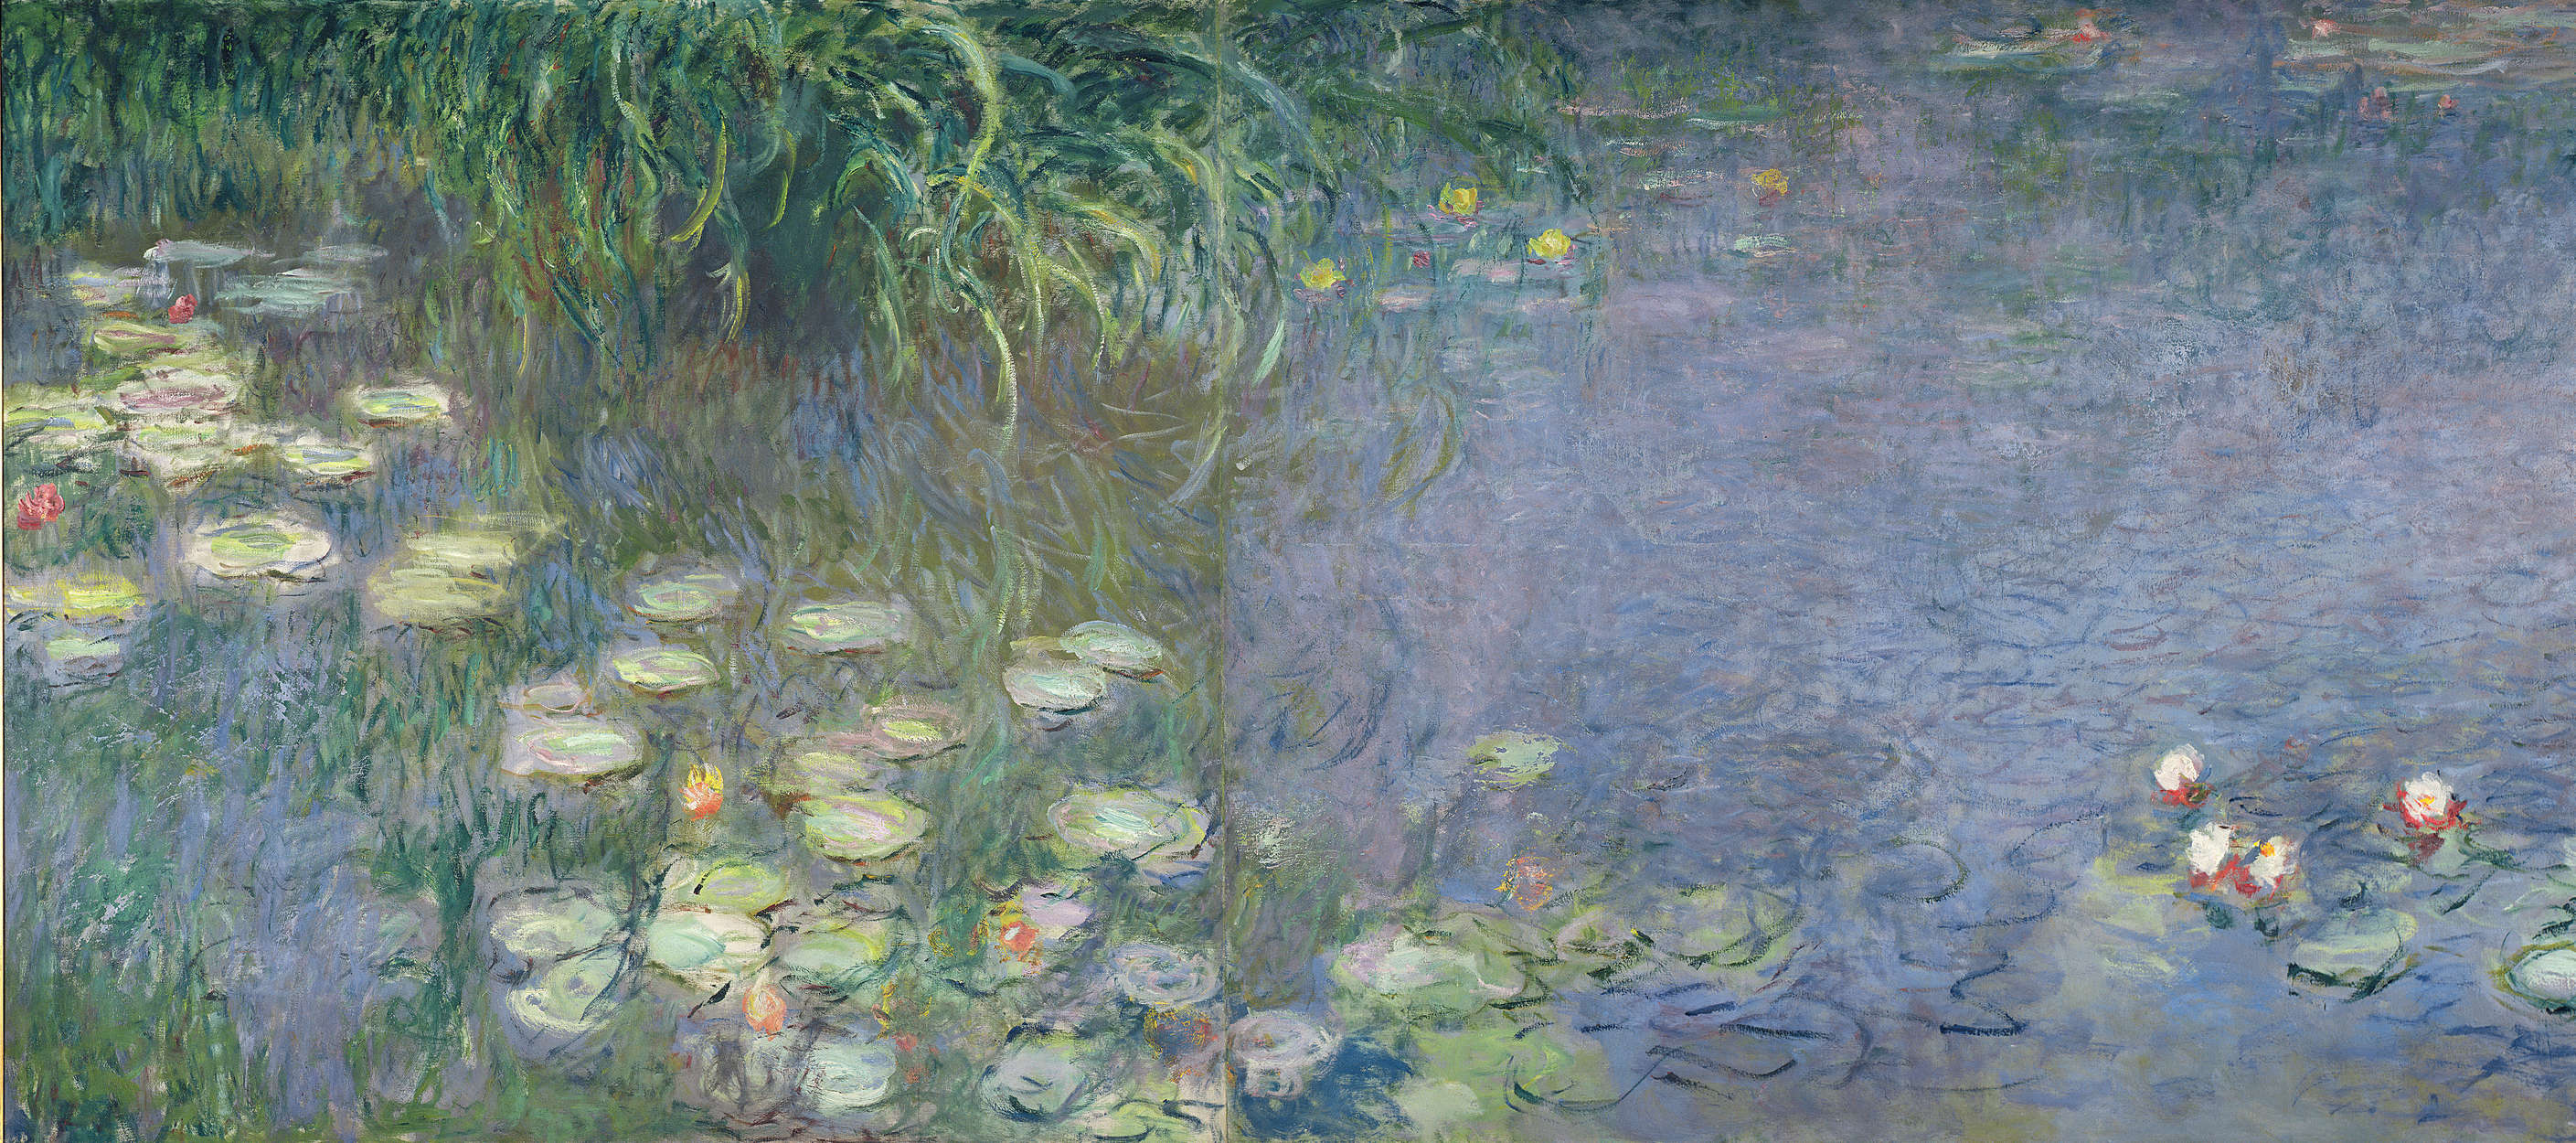             Papier peint "Nymphéas : Demain" de Claude Monet
        